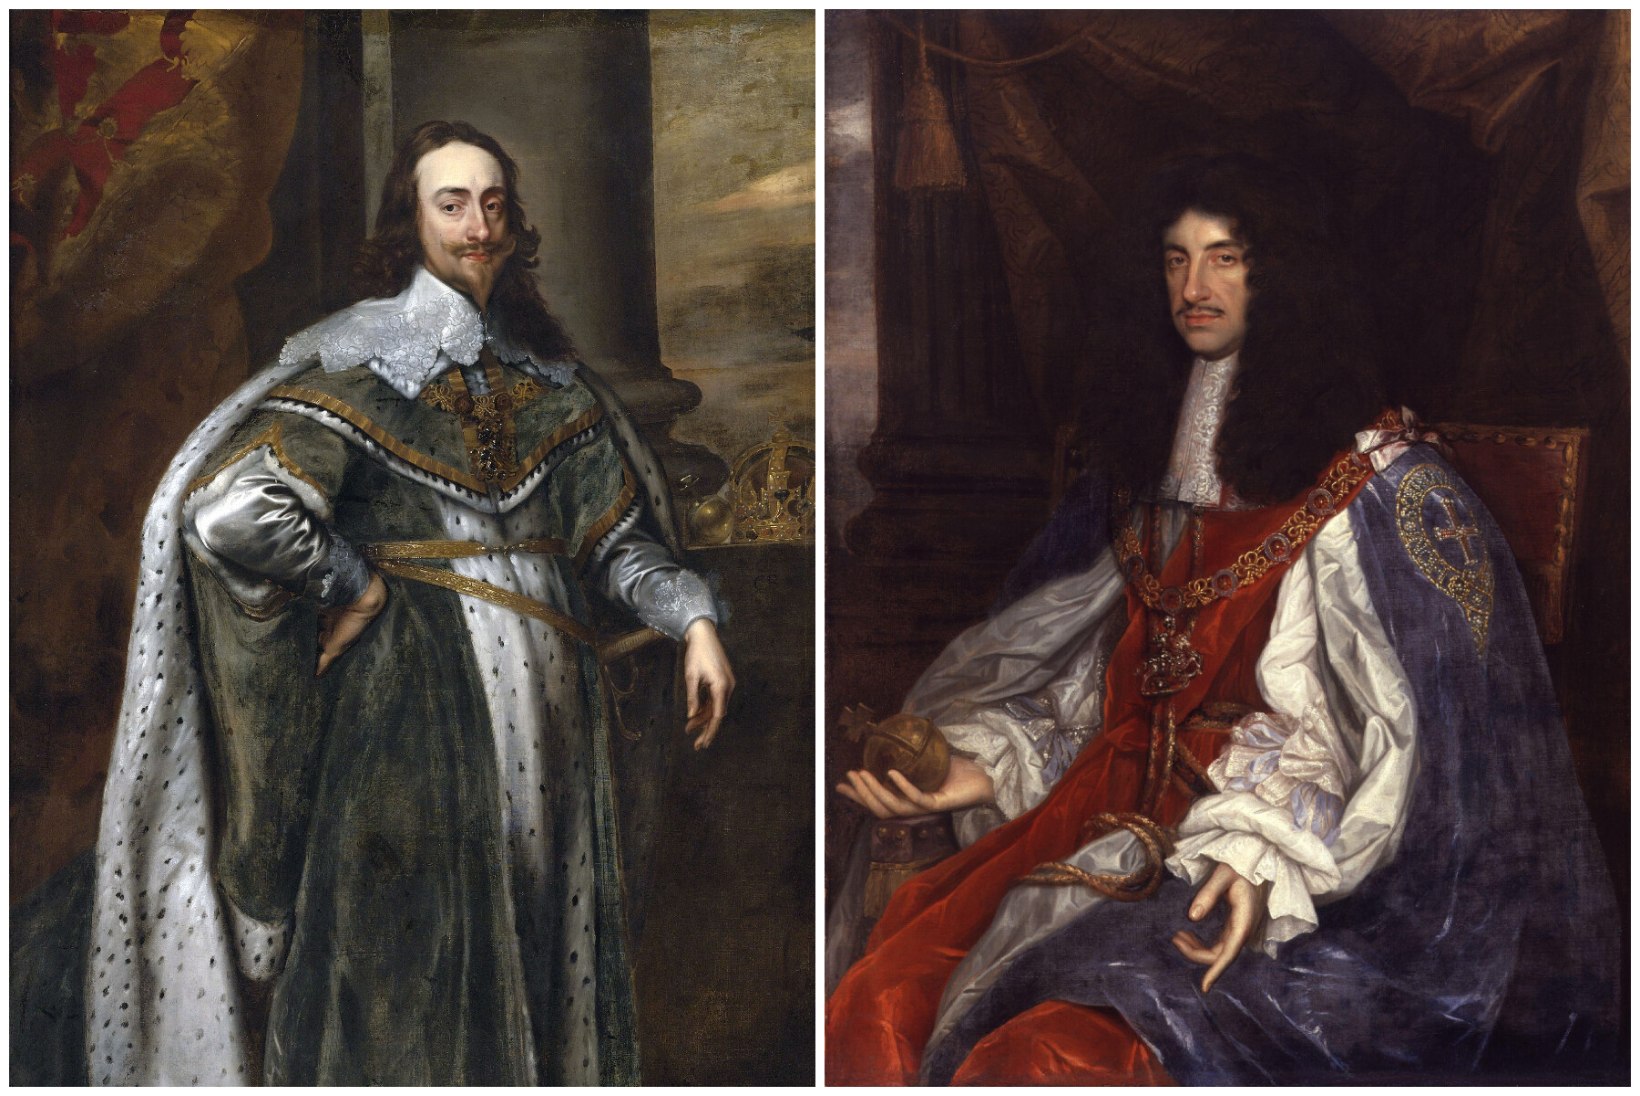 Esimesed Charlesid Briti troonil – üks kaotas pea, teine sigitas ohtralt sohilapsi